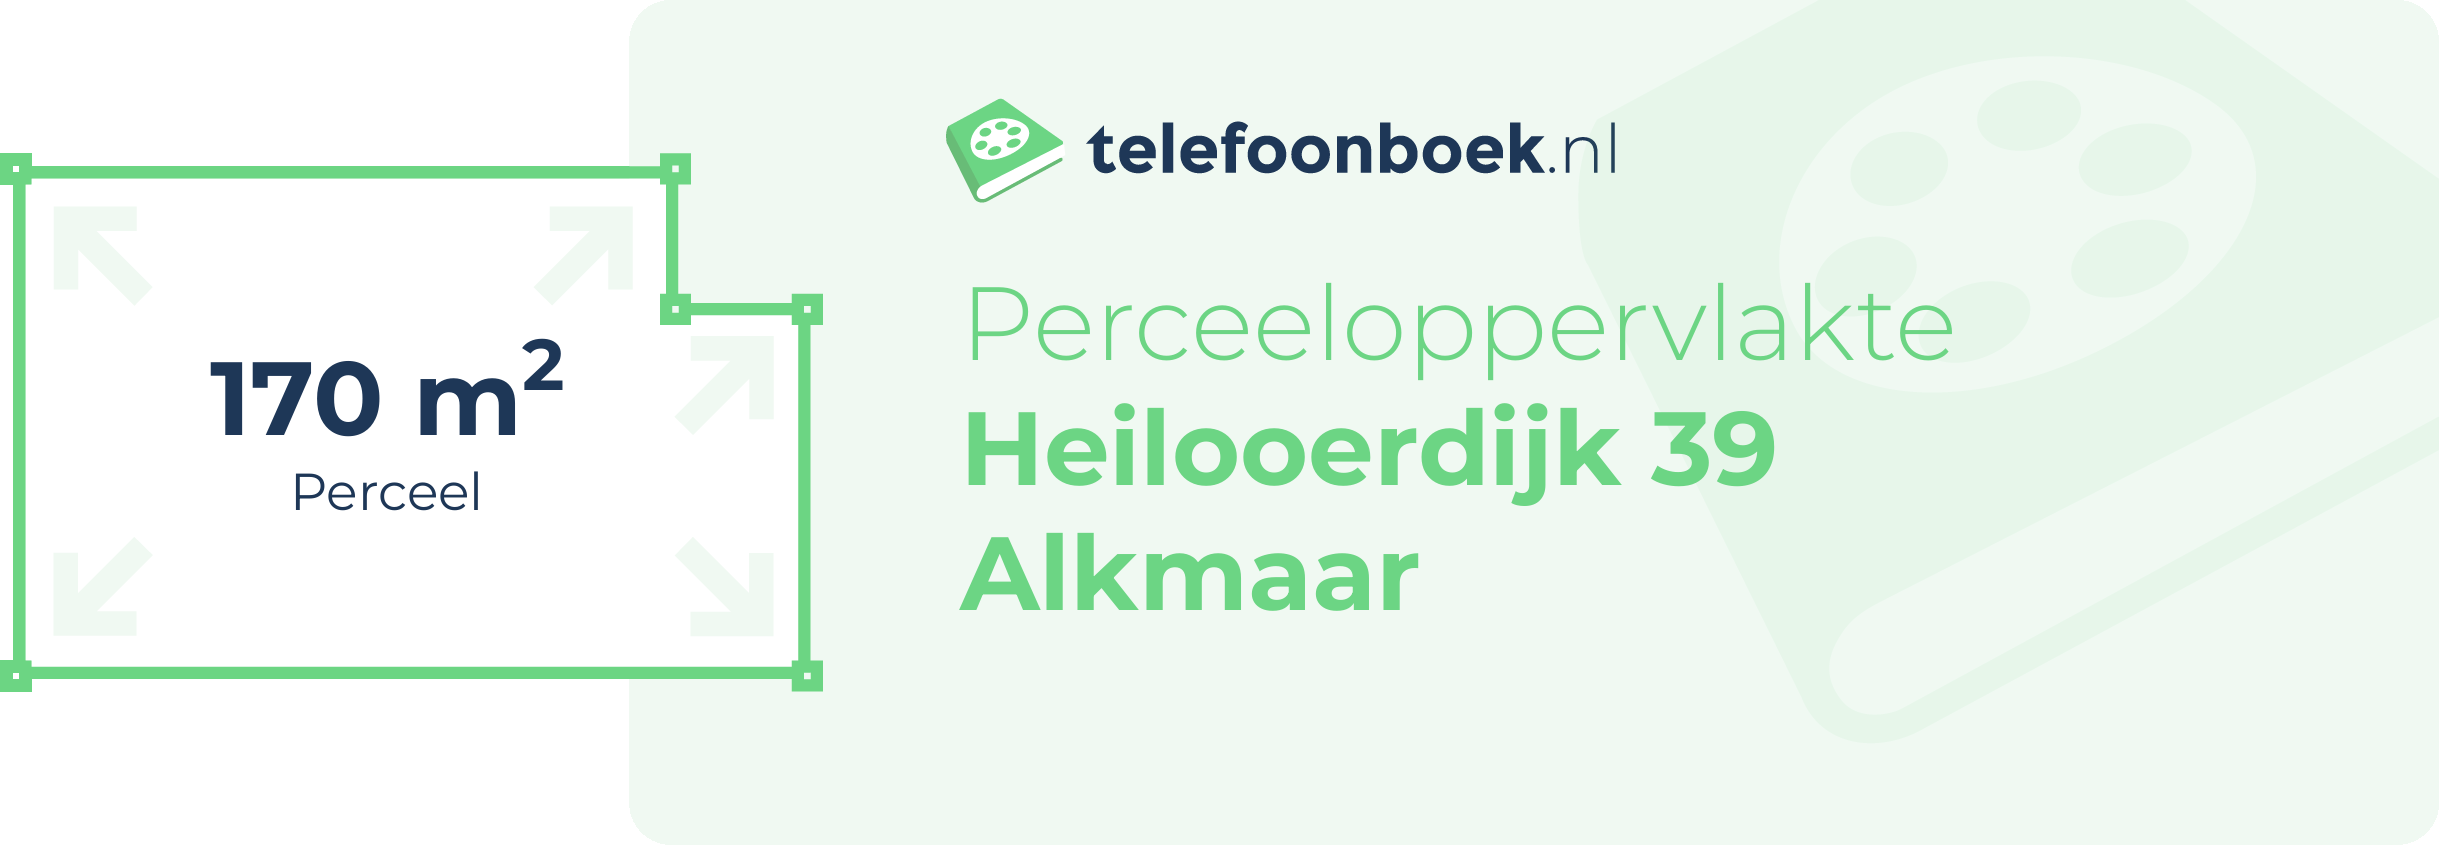 Perceeloppervlakte Heilooerdijk 39 Alkmaar